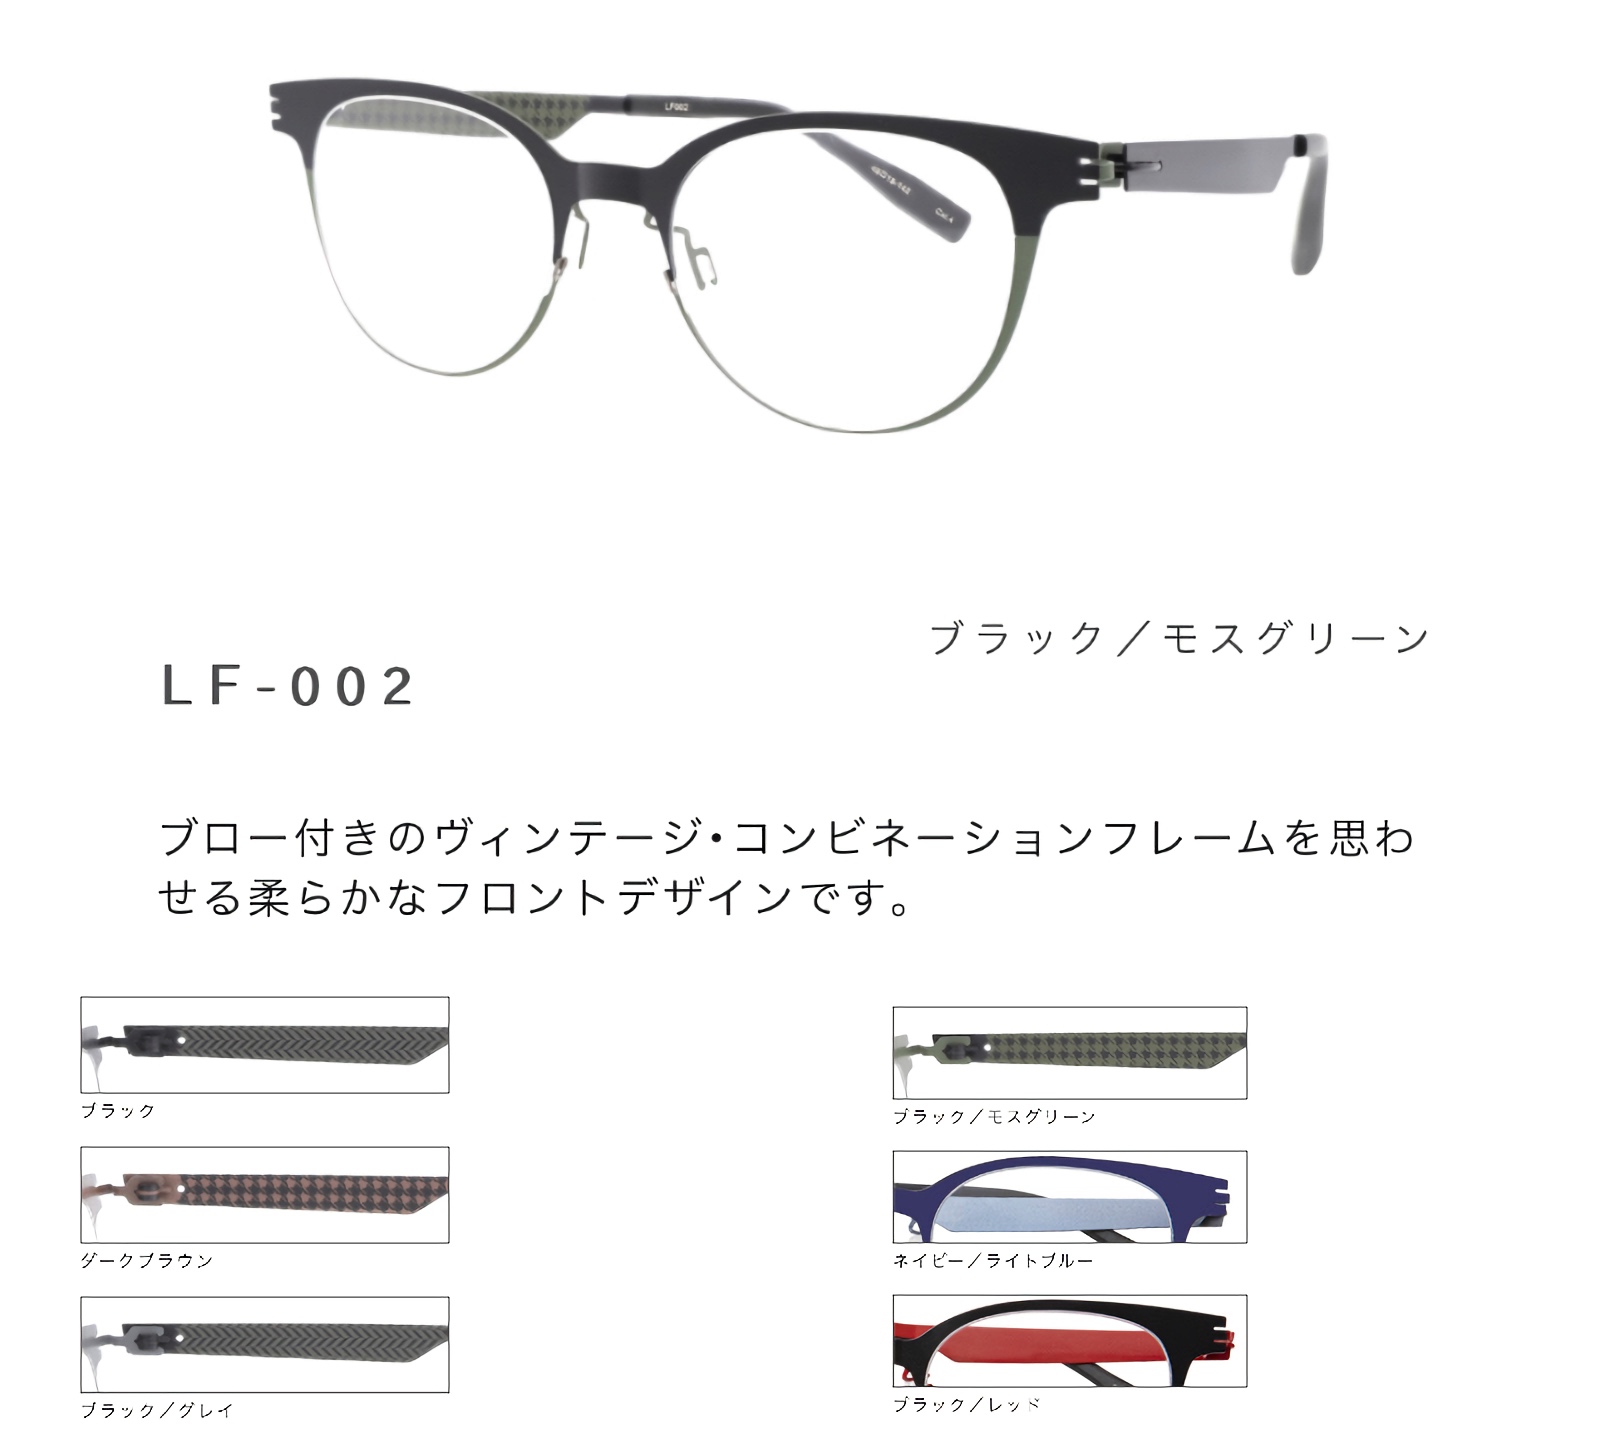 セイコー 眼鏡フレーム LF-002